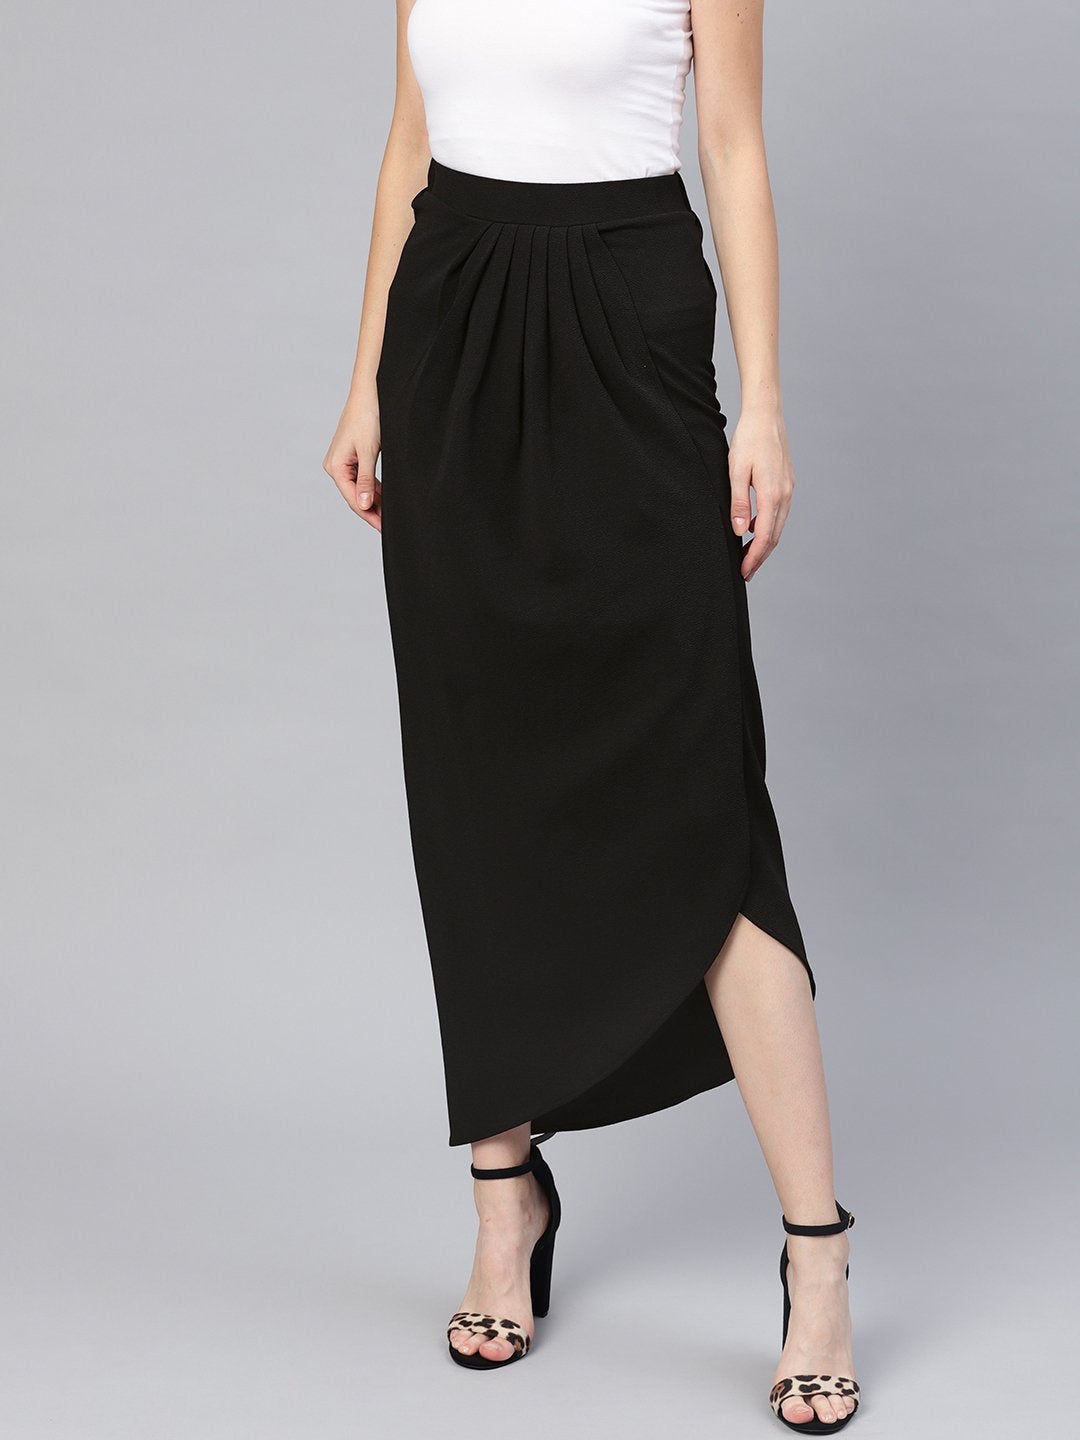 Women's Black Tulip Skirt - SASSAFRAS